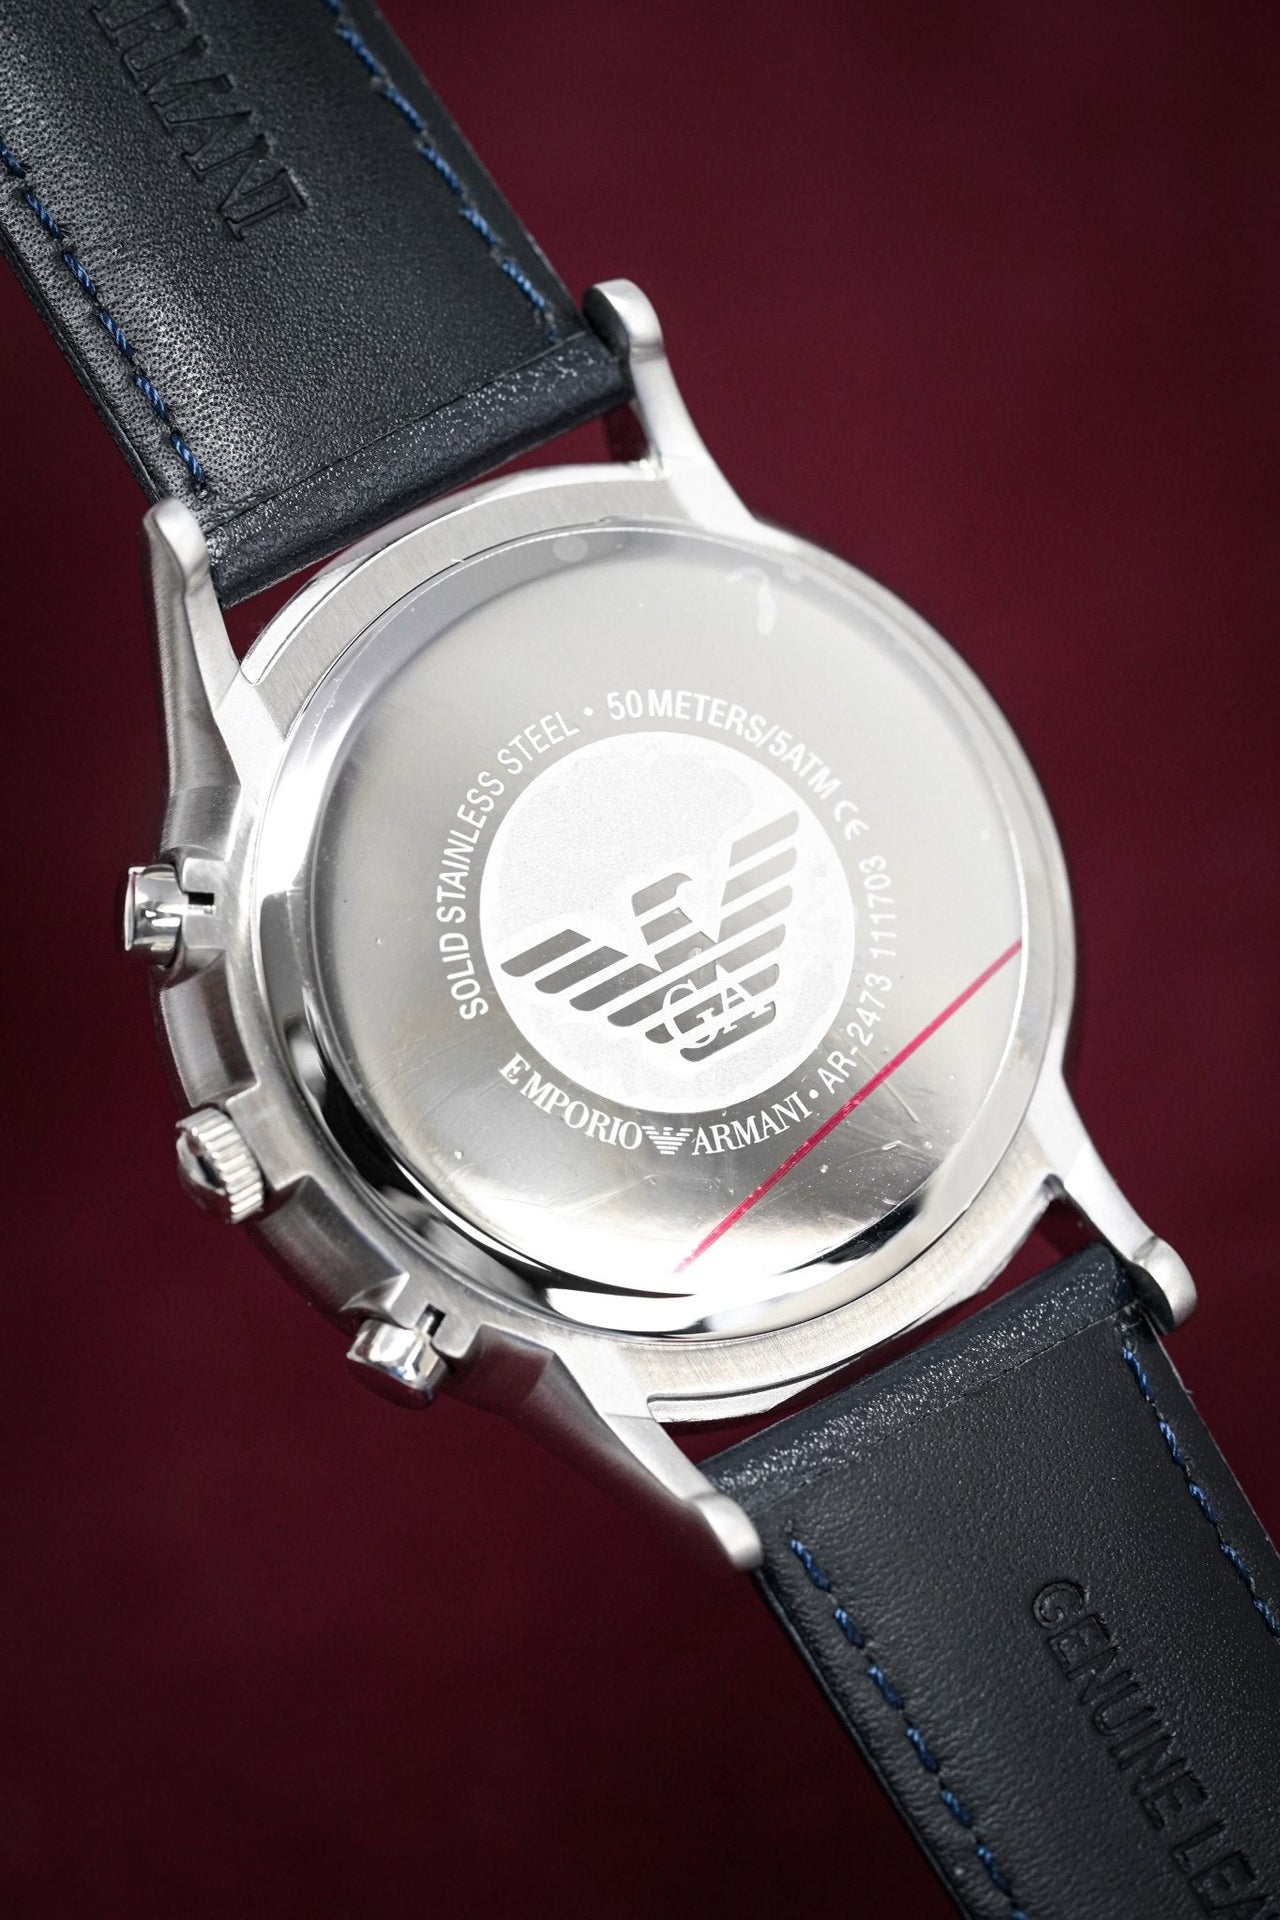 Emporio Armani Men's Renato Chronograph Watch Blue AR2473 - Watches & Crystals